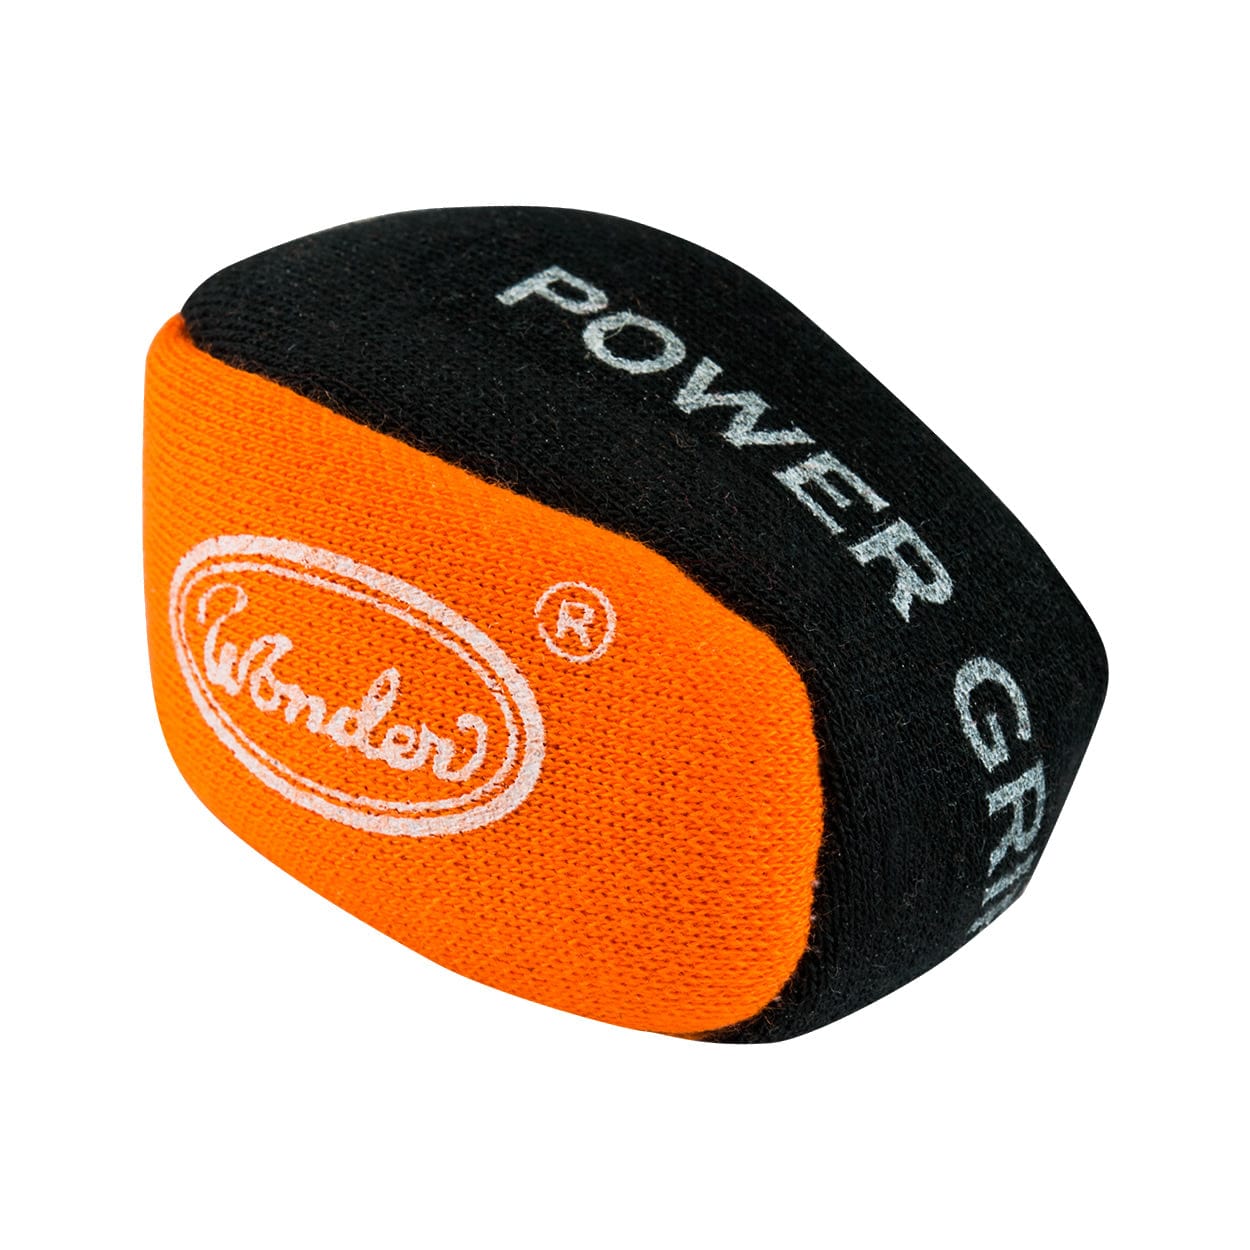 Designa Power Grip Ball - For Better Grip Dart Control - Absorbs Moisture Orange